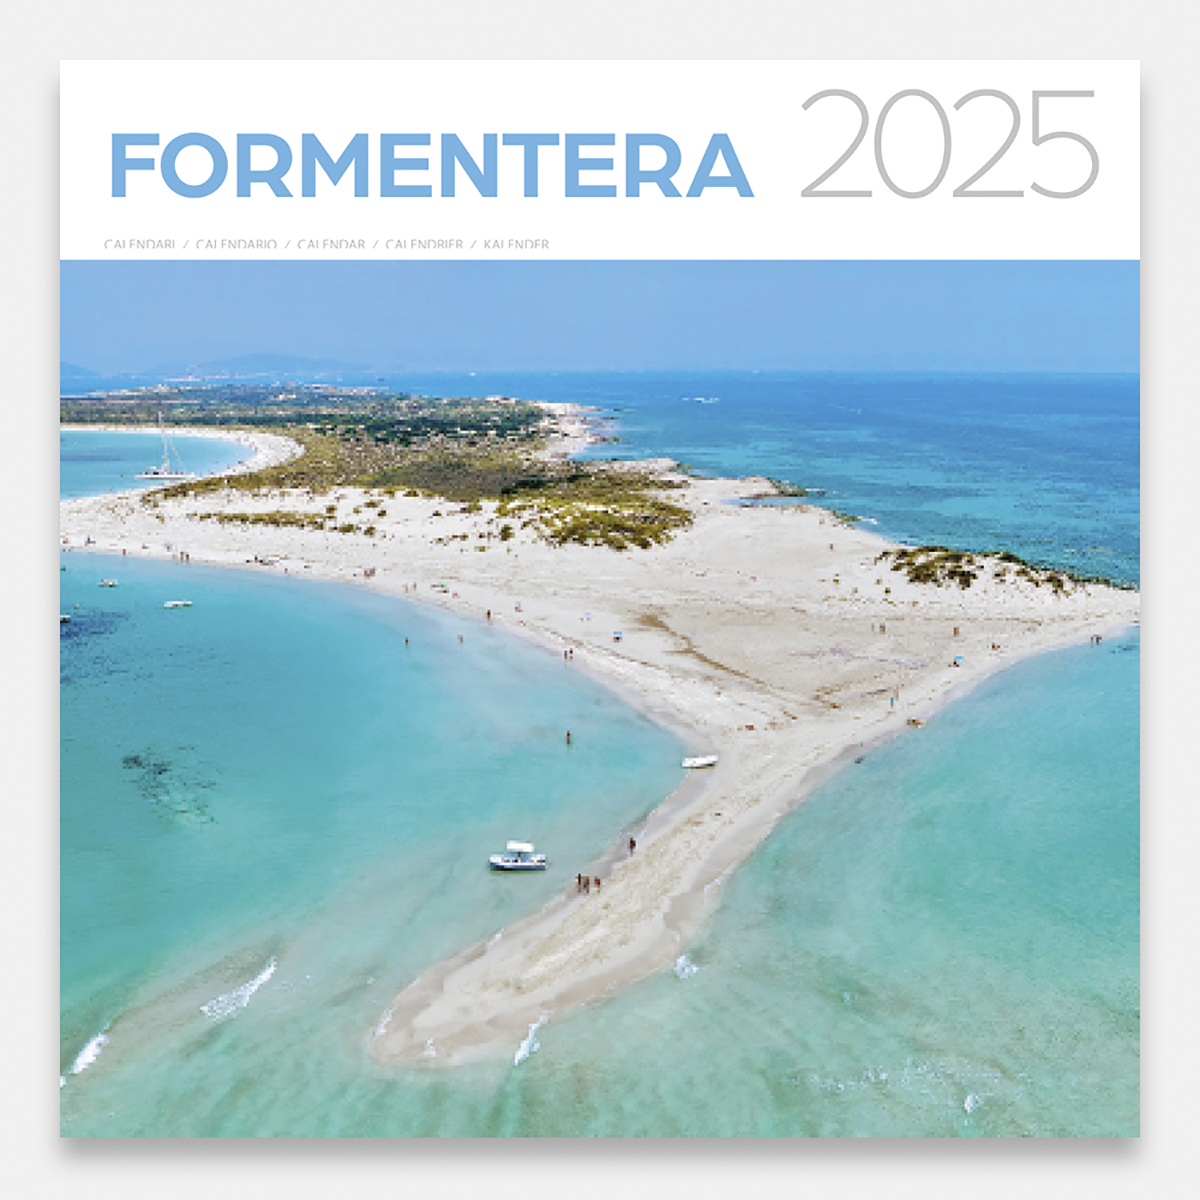 Calendario 2025 Formentera 25forg calendario pared 2025 formentera